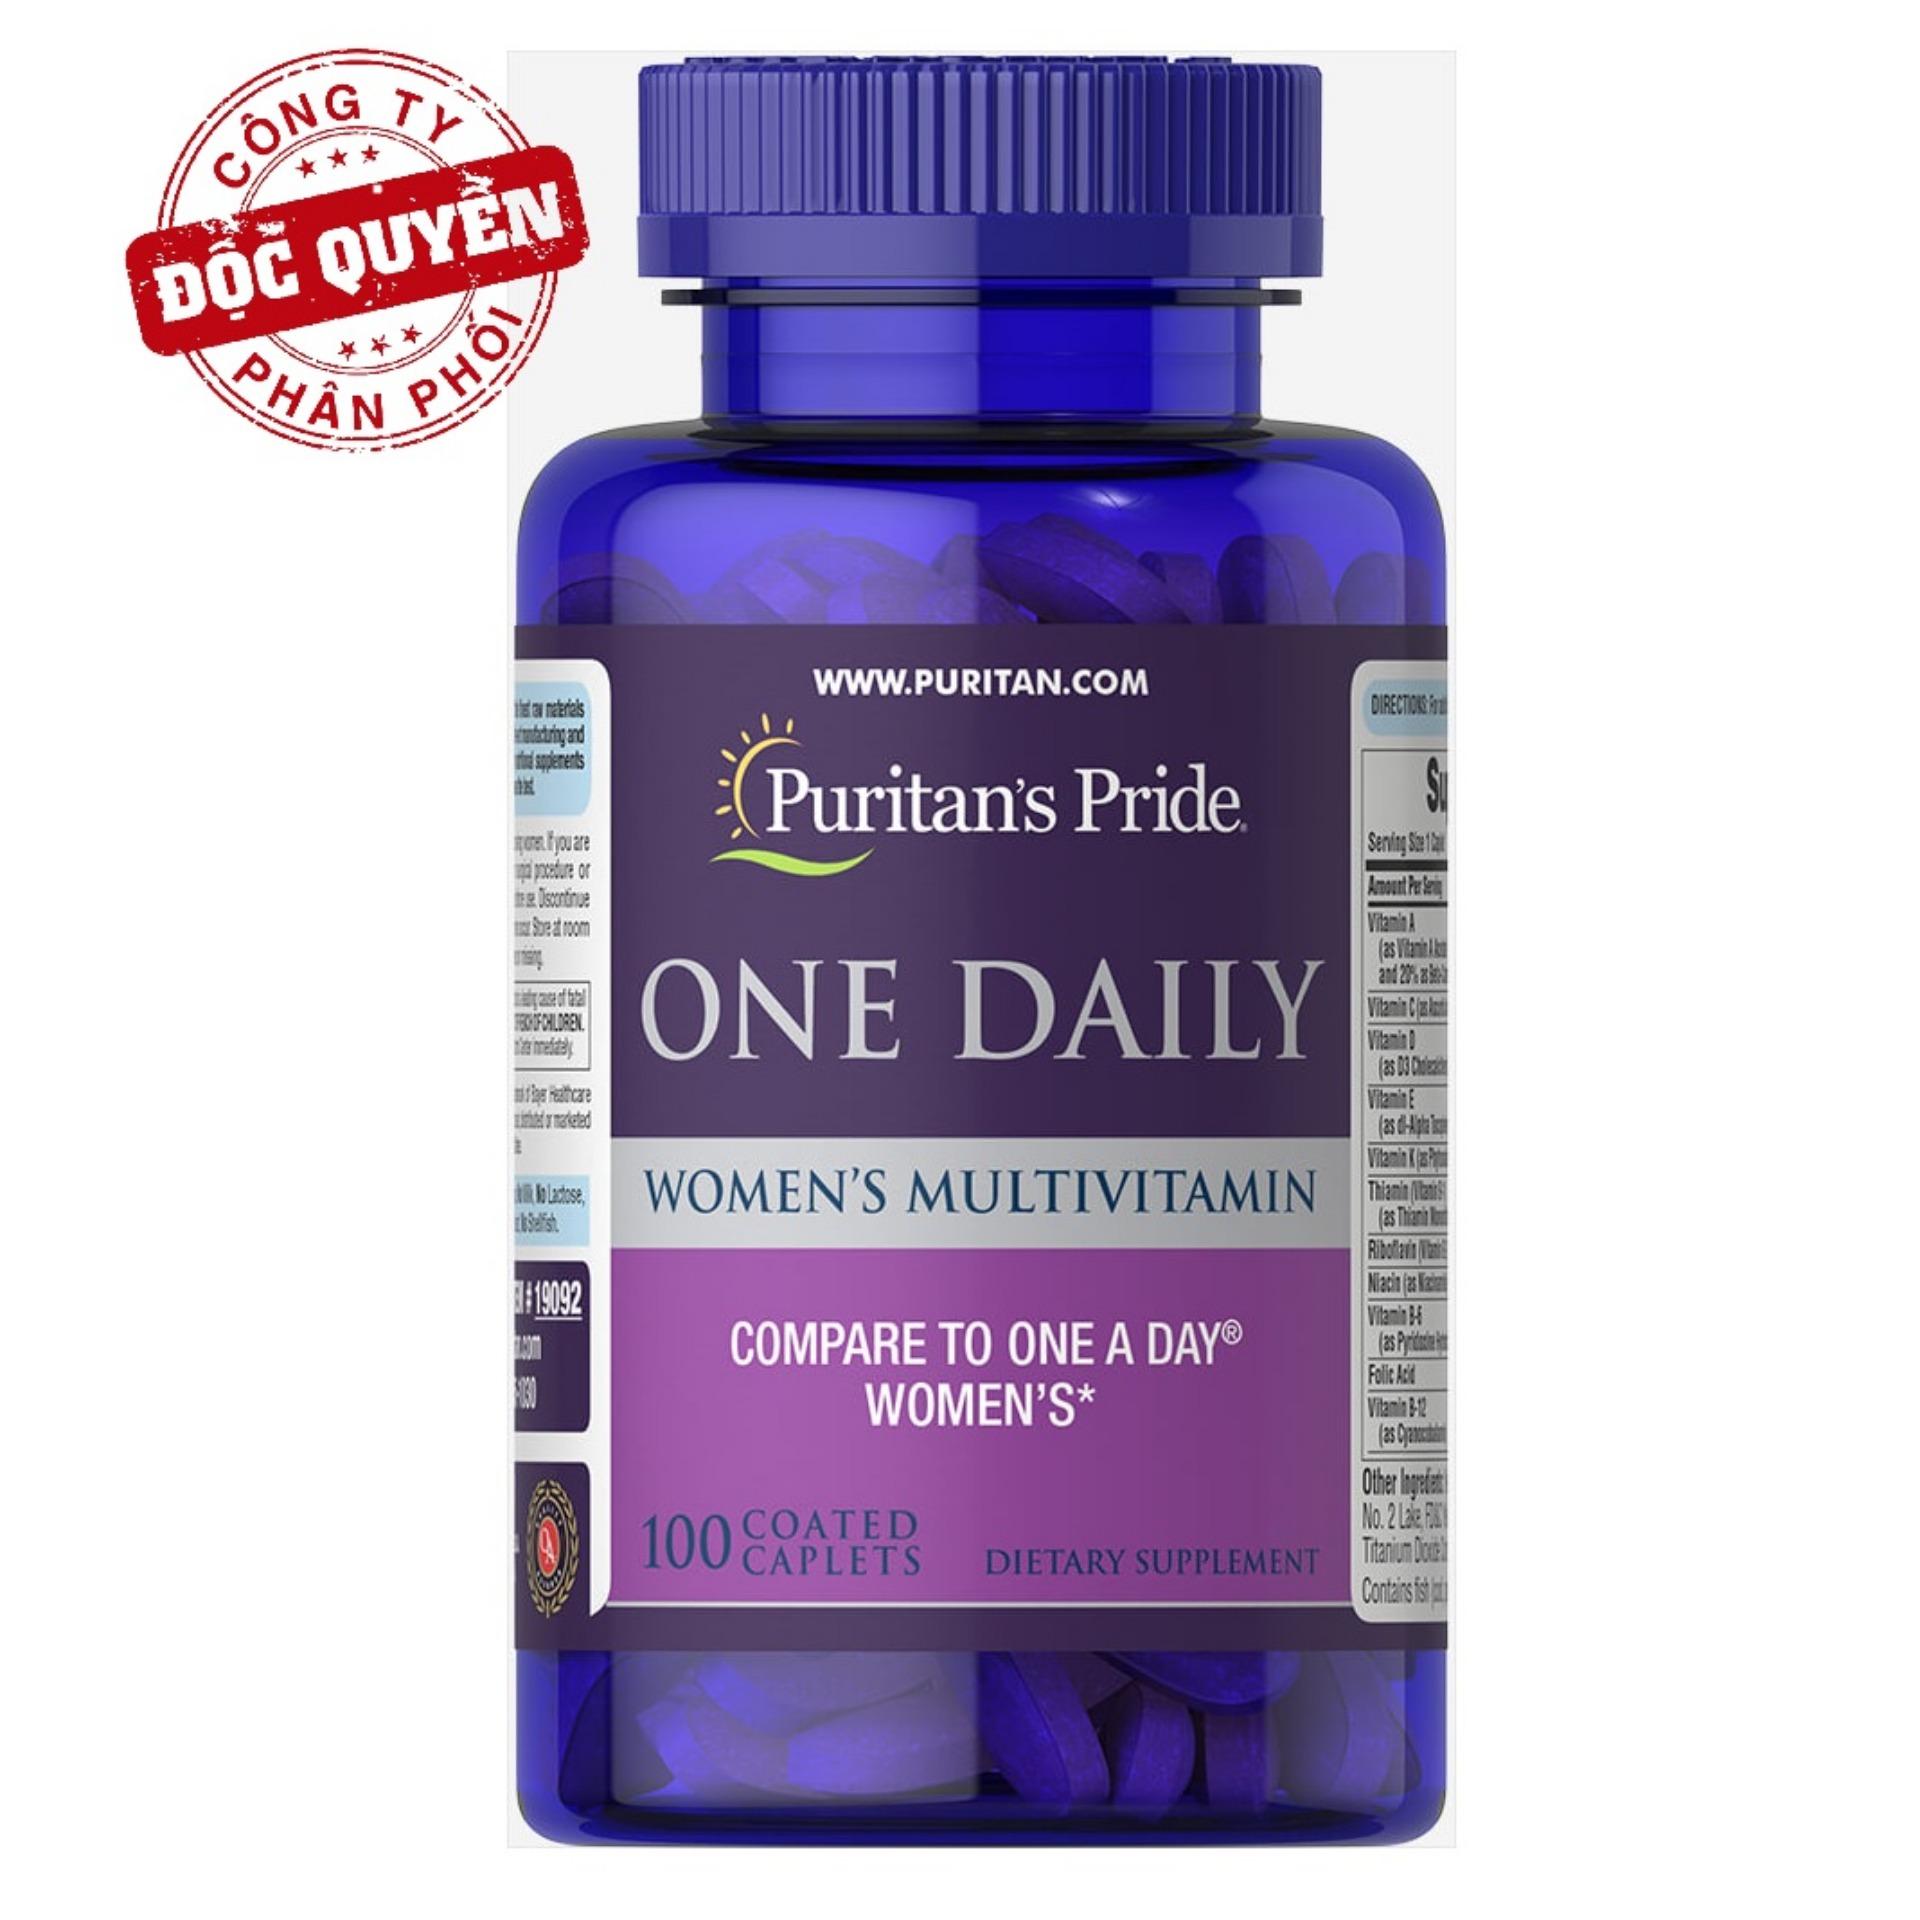 Vitamin tổng hợp cho phụ nữ 1 viên/ngày Puritan's Pride One Daily Women's Multivitamin 100 viên HSD tháng 12/2018